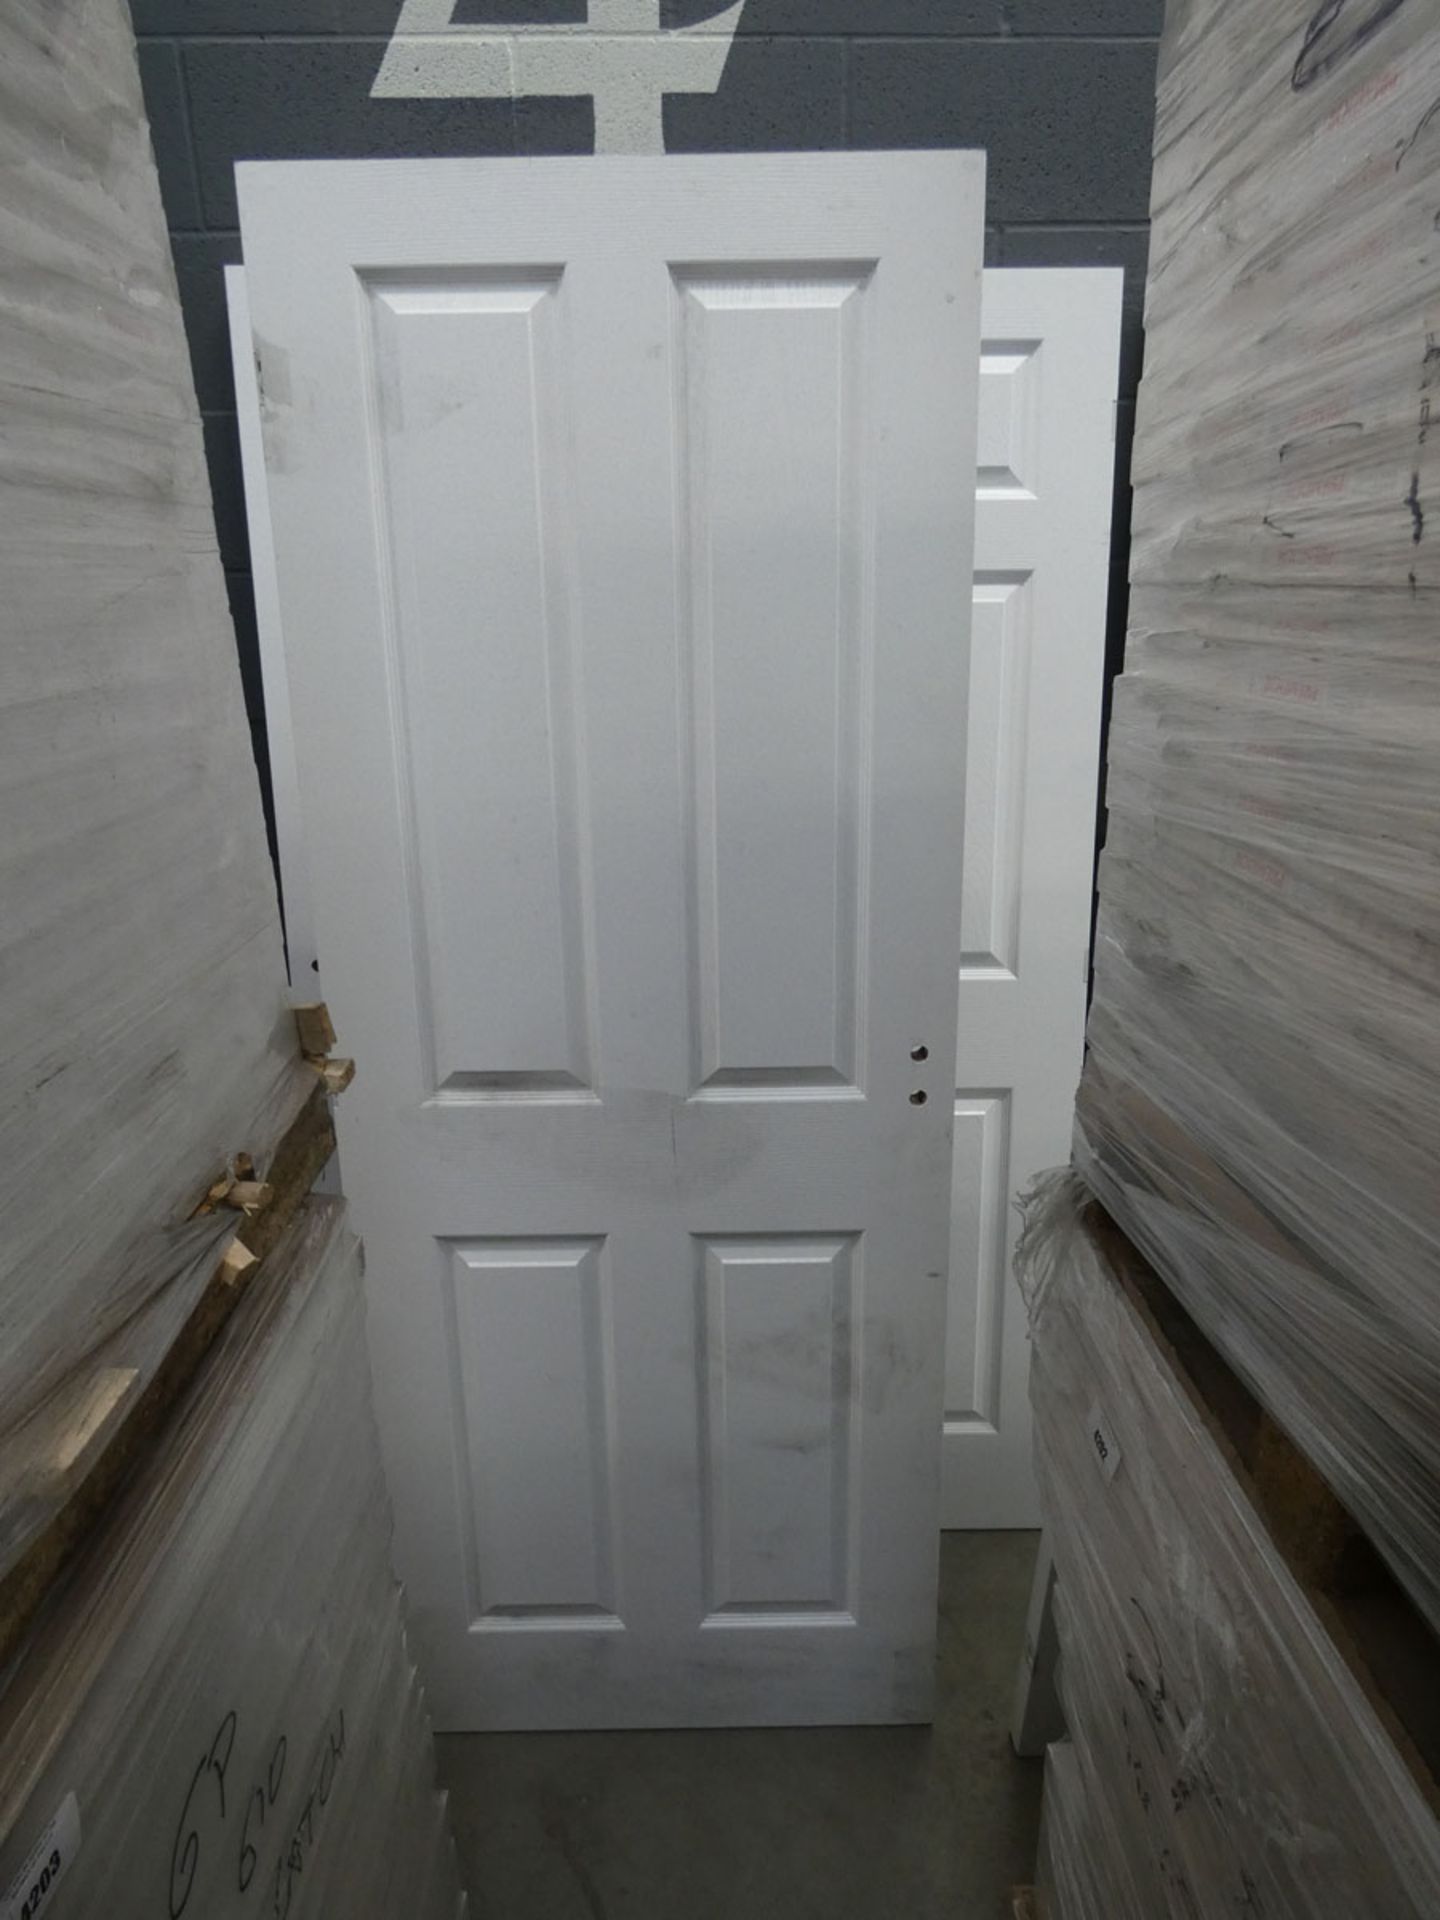 23 Premdor 4 panel internal doors (838mm wide) Condition report: H1982mm